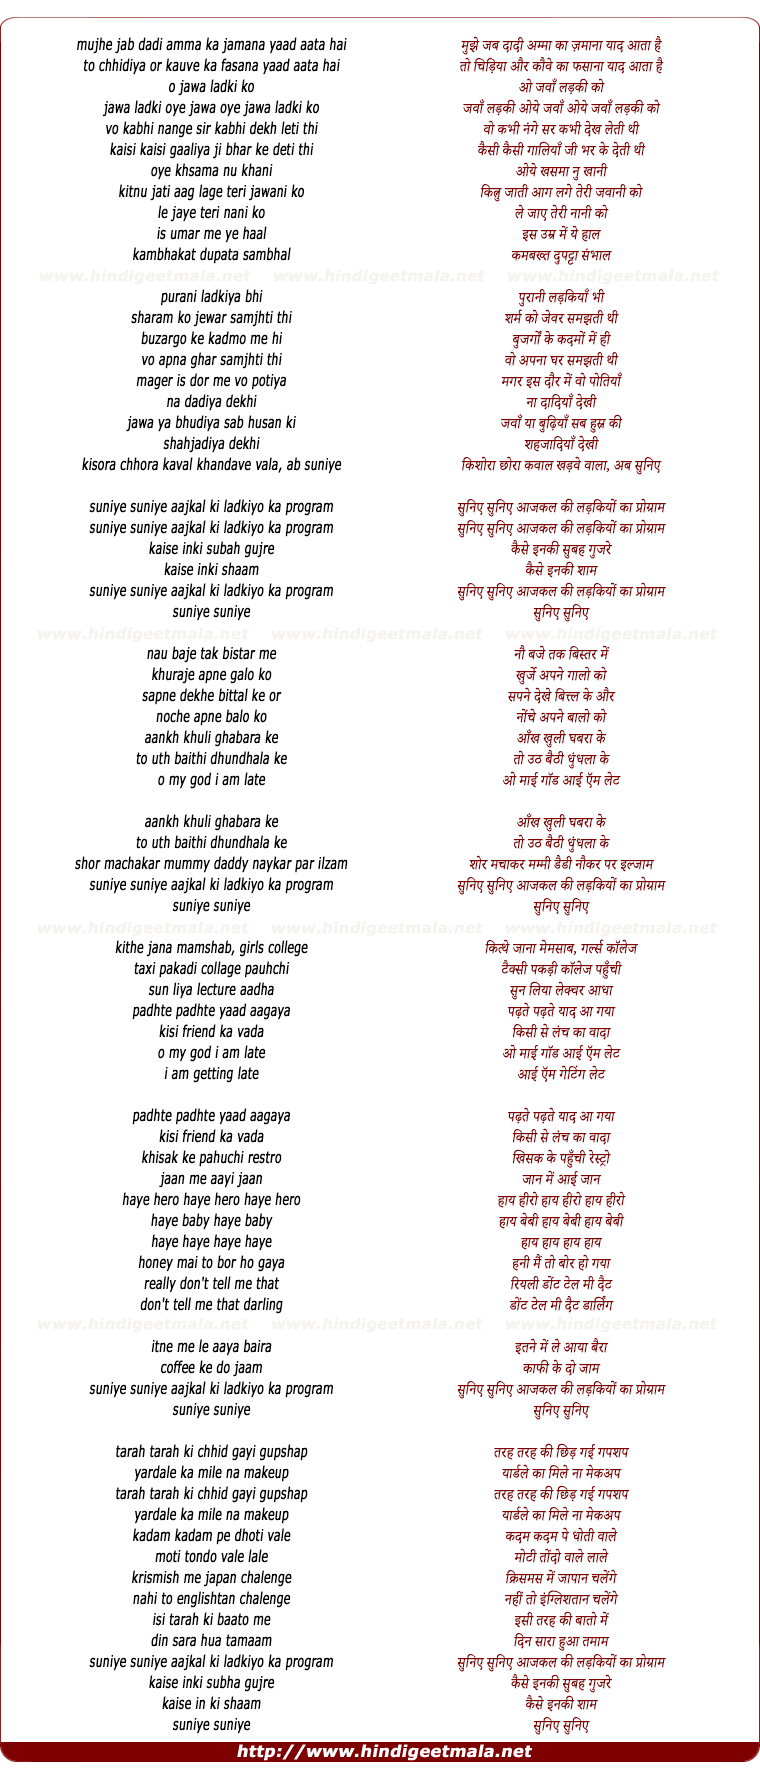 lyrics of song Suniye Suniye Aajkal Ki Ladkiyo Ka Program